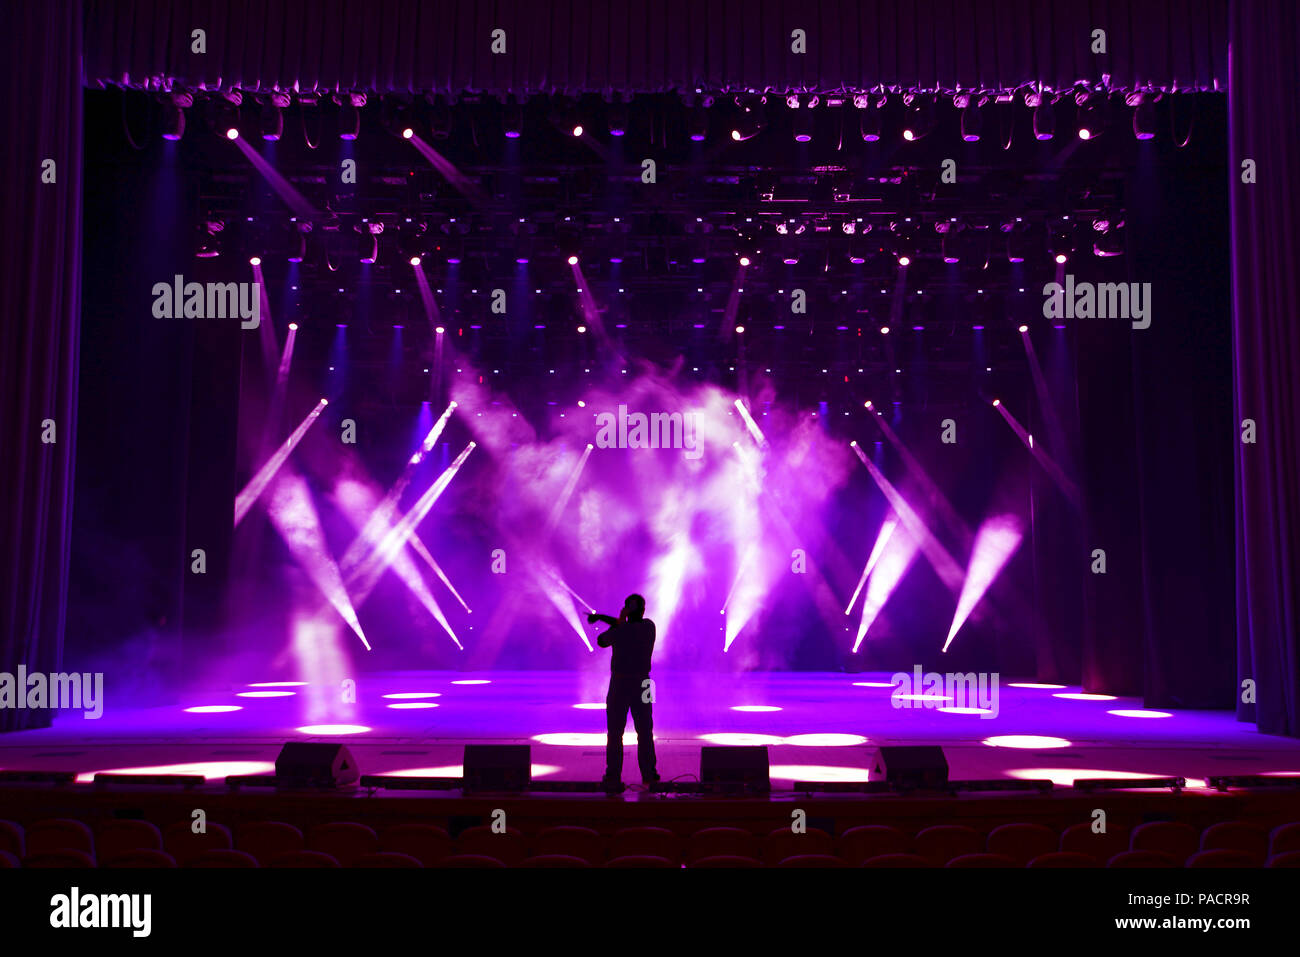 La silhouette de l'homme chanter sur une scène show lumineux sur fond de rayons de soffites et brouillard scénique Banque D'Images